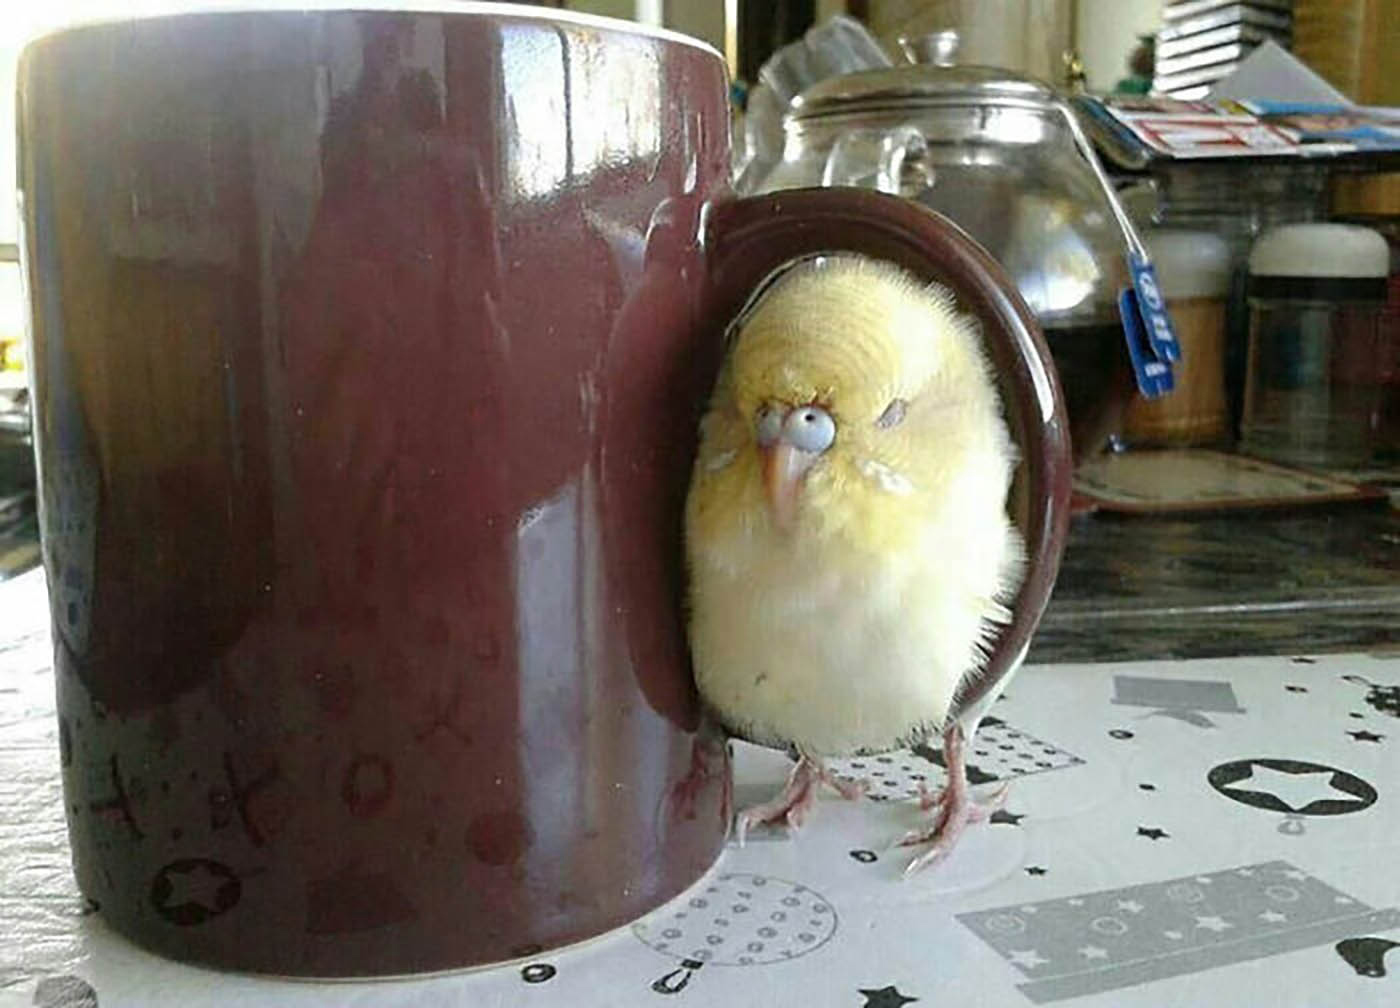 Indem er eine Tasse auswählt, zeigt dieser flauschige Vogel, dass er es im Griff hat, gemütliche Orte zum Entspannen im Haus zu finden